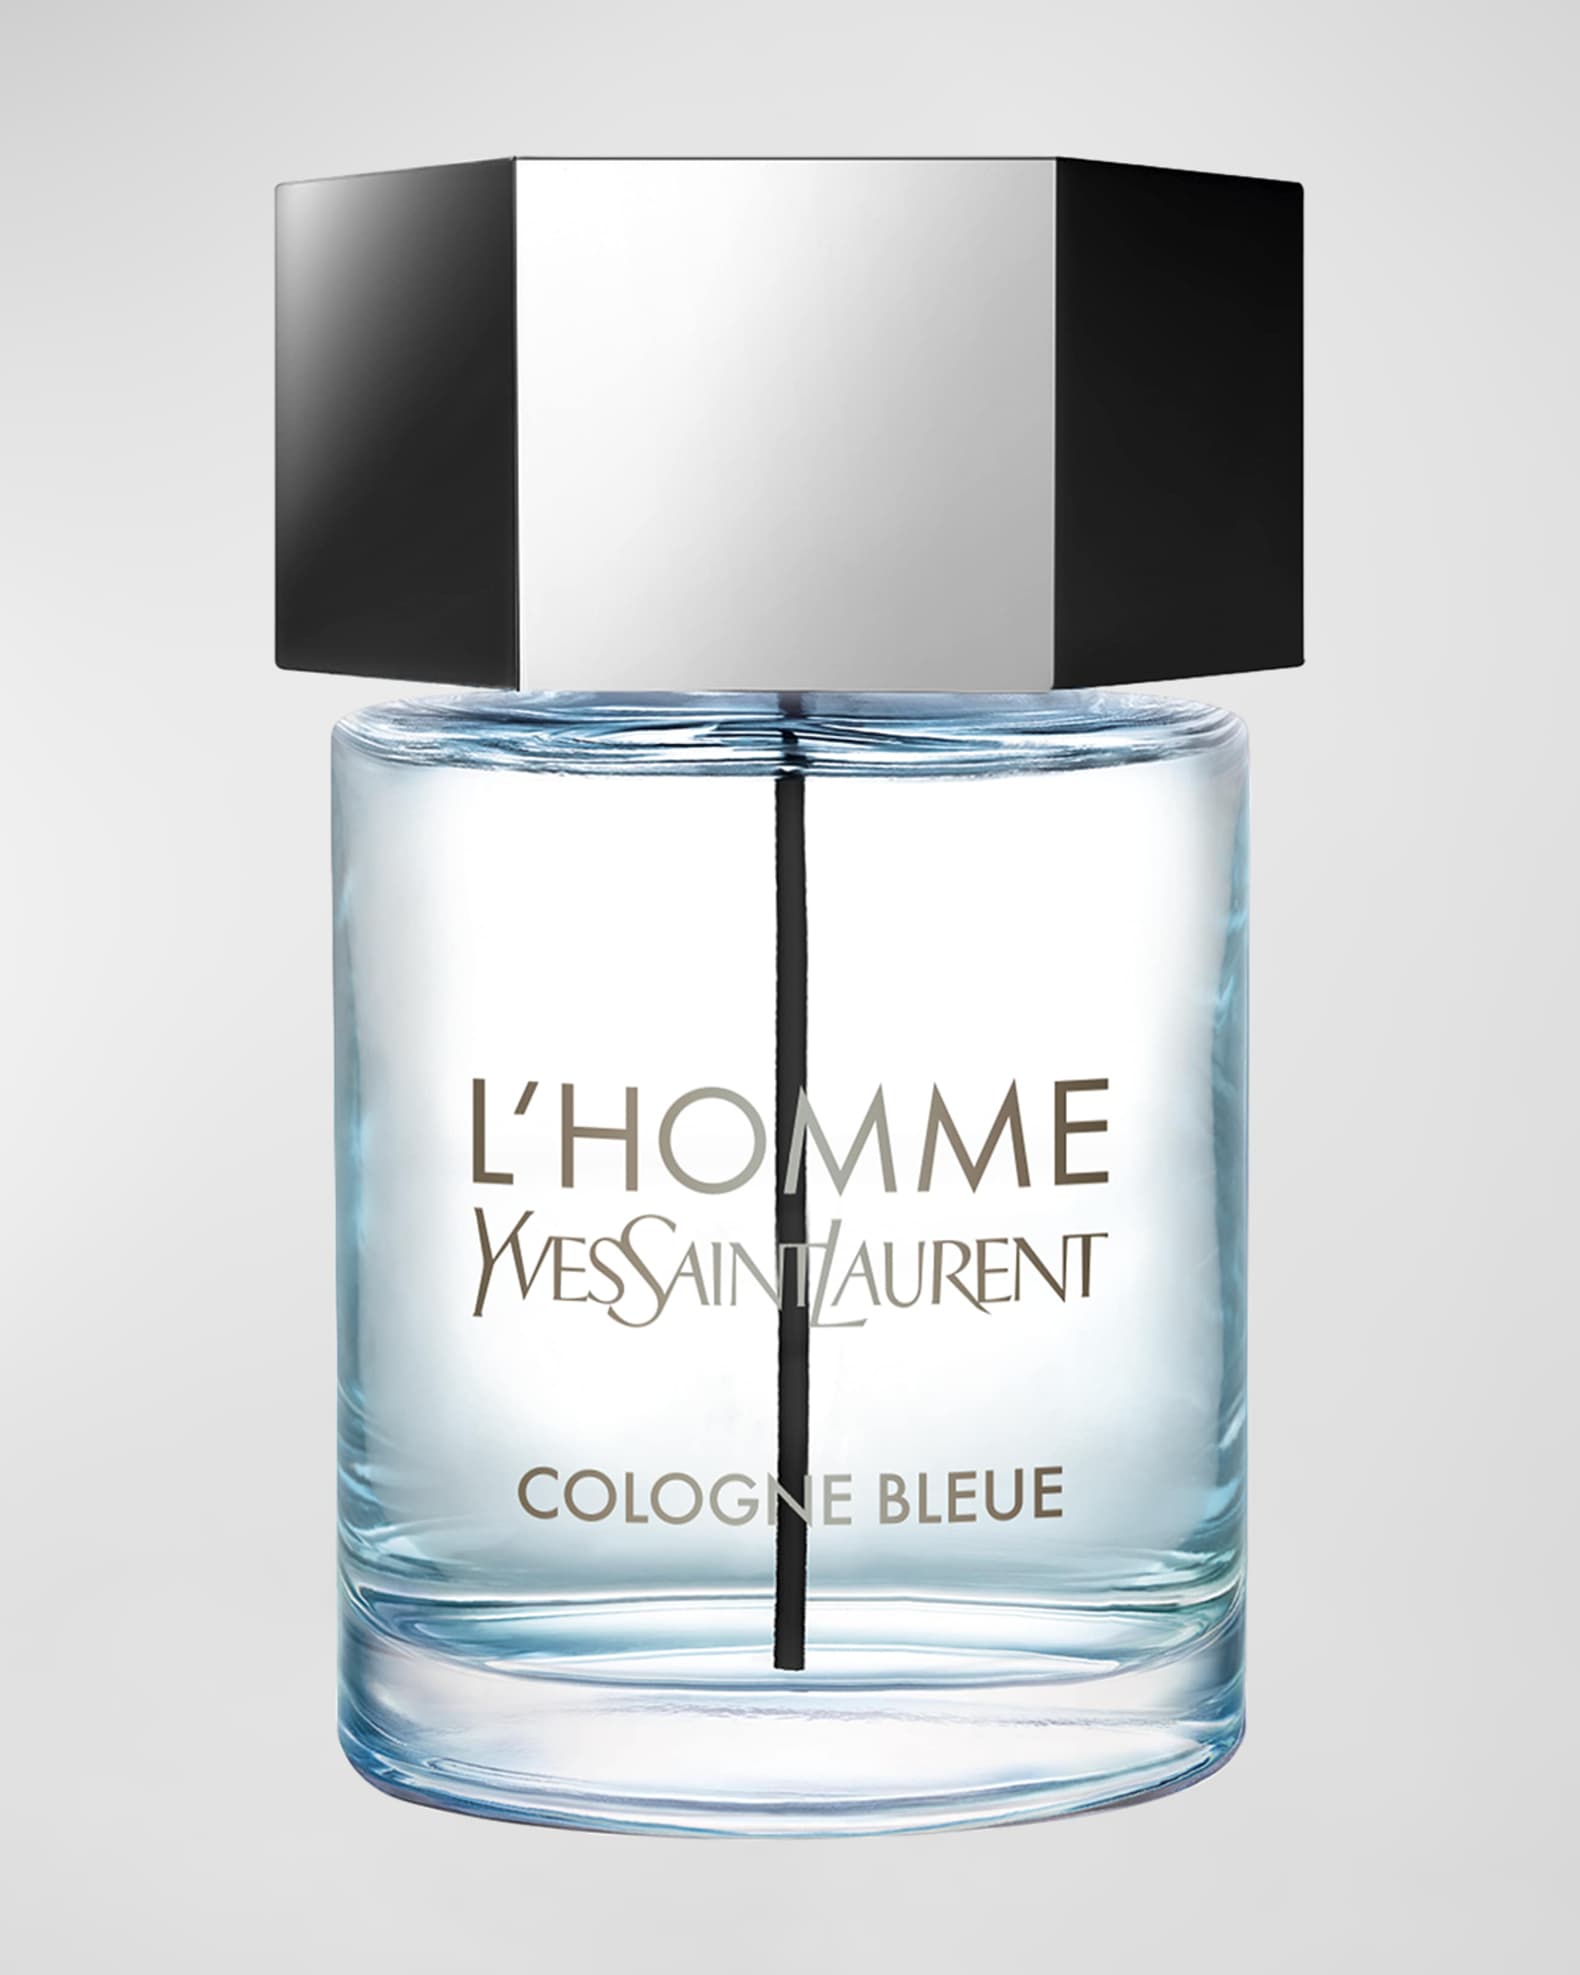 Yves Saint Laurent Beaute L'Homme Cologne Bleue Eau de Toilette, 3.3 oz.